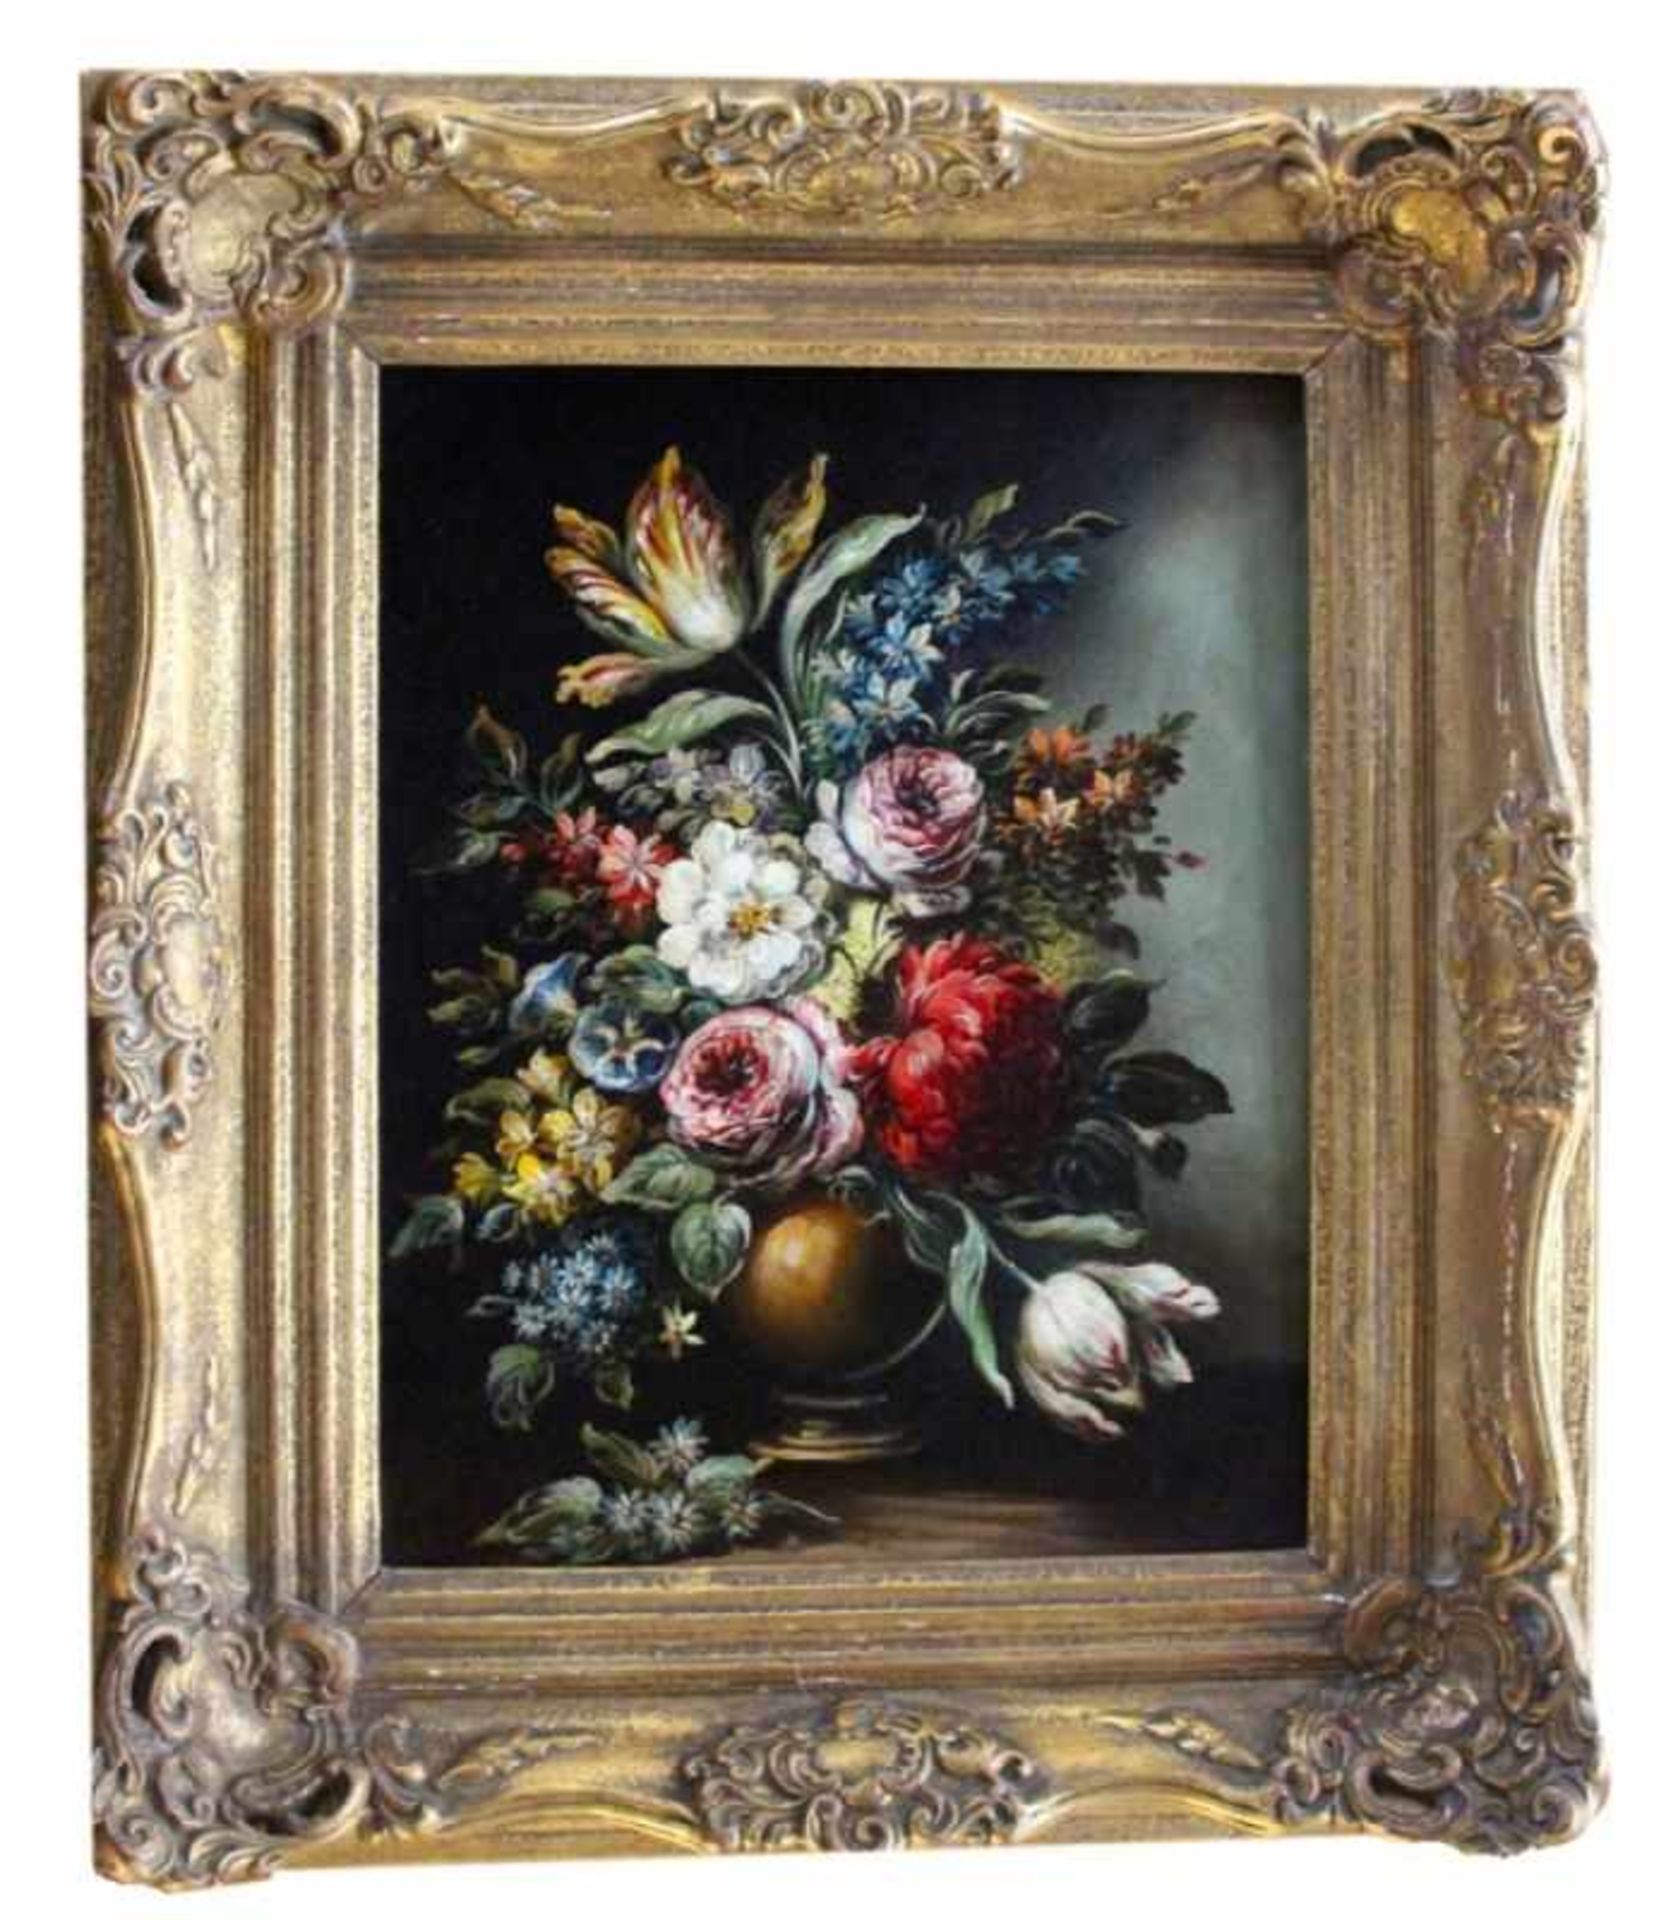 Gemälde - Anonym (XX.Jahrhundert) "Blumenstillleben", unsigniert, Öl auf Leinwand, Maße ca. 50x40